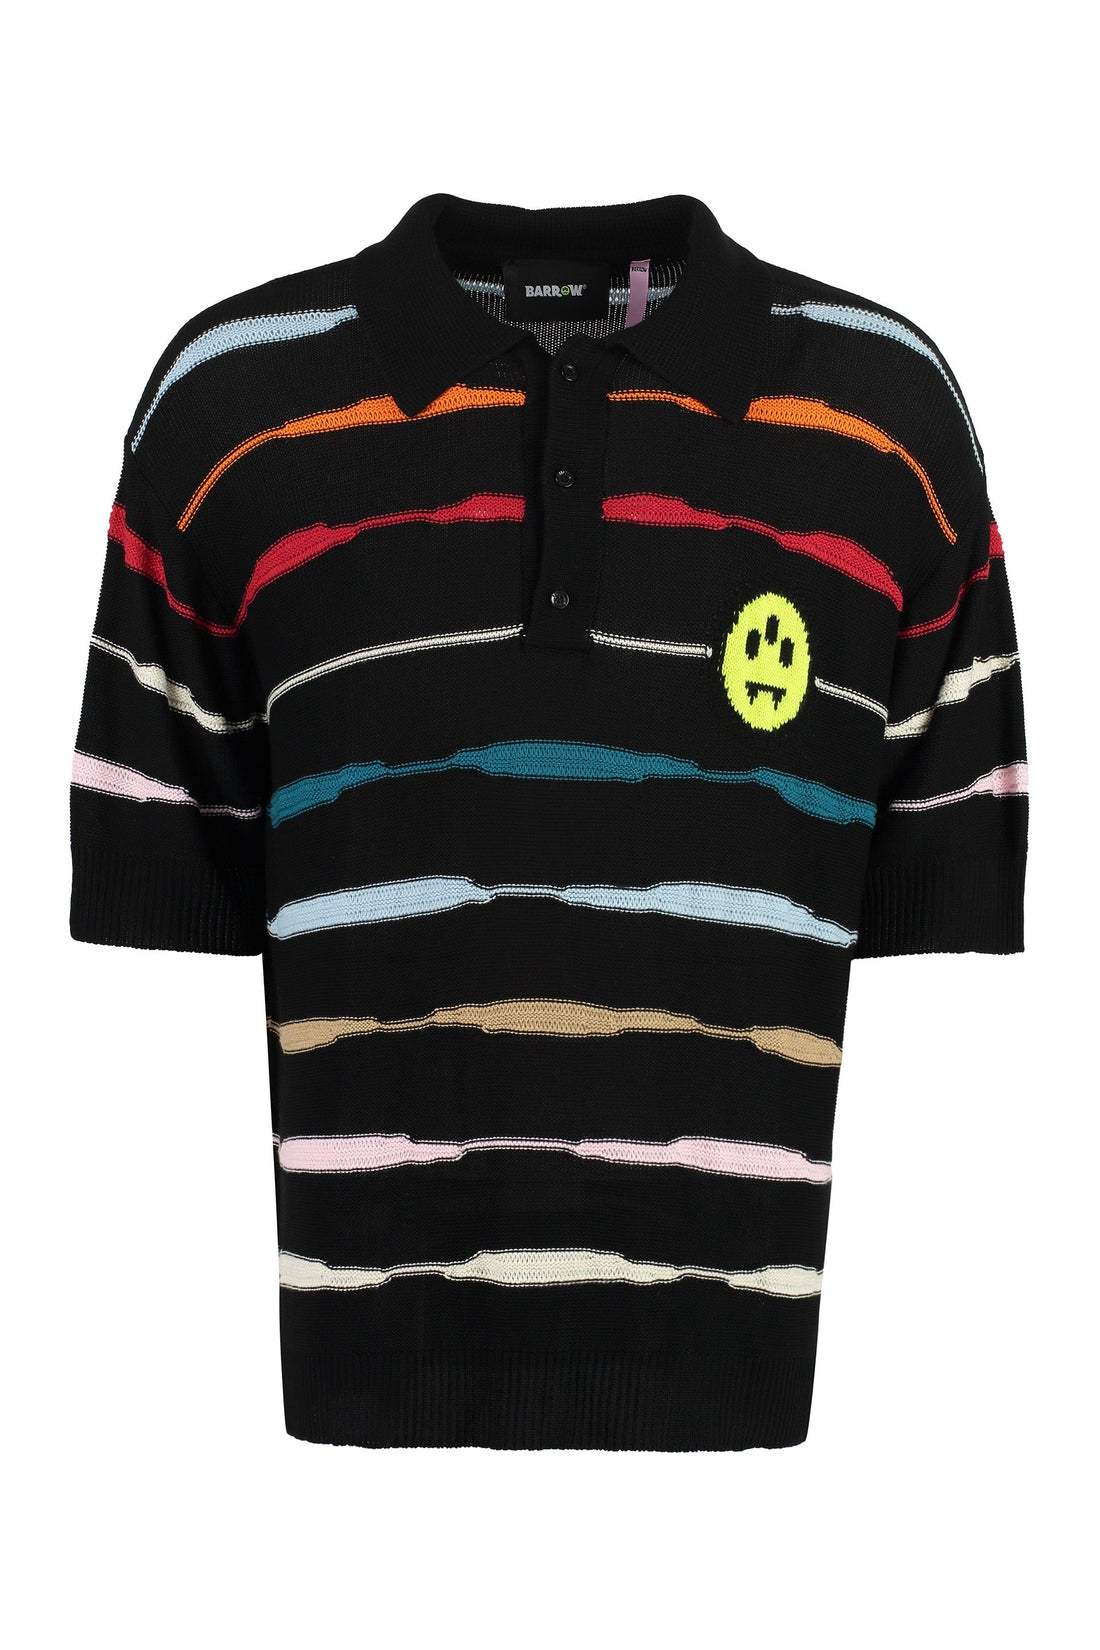 Barrow-OUTLET-SALE-Short sleeve polo shirt-ARCHIVIST